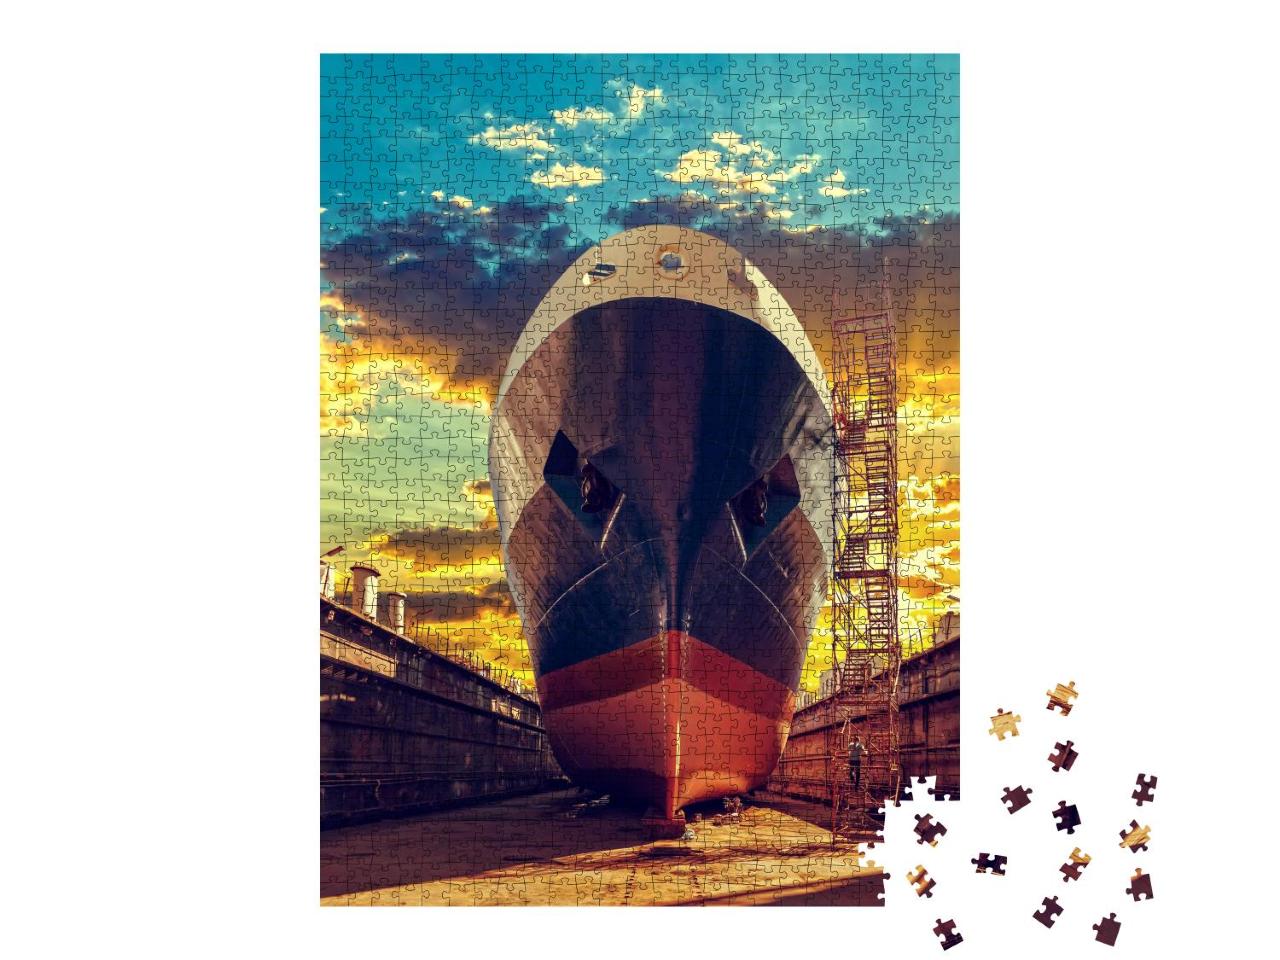 Puzzle 1000 Teile „Schiff im Trockendock einer Werft“